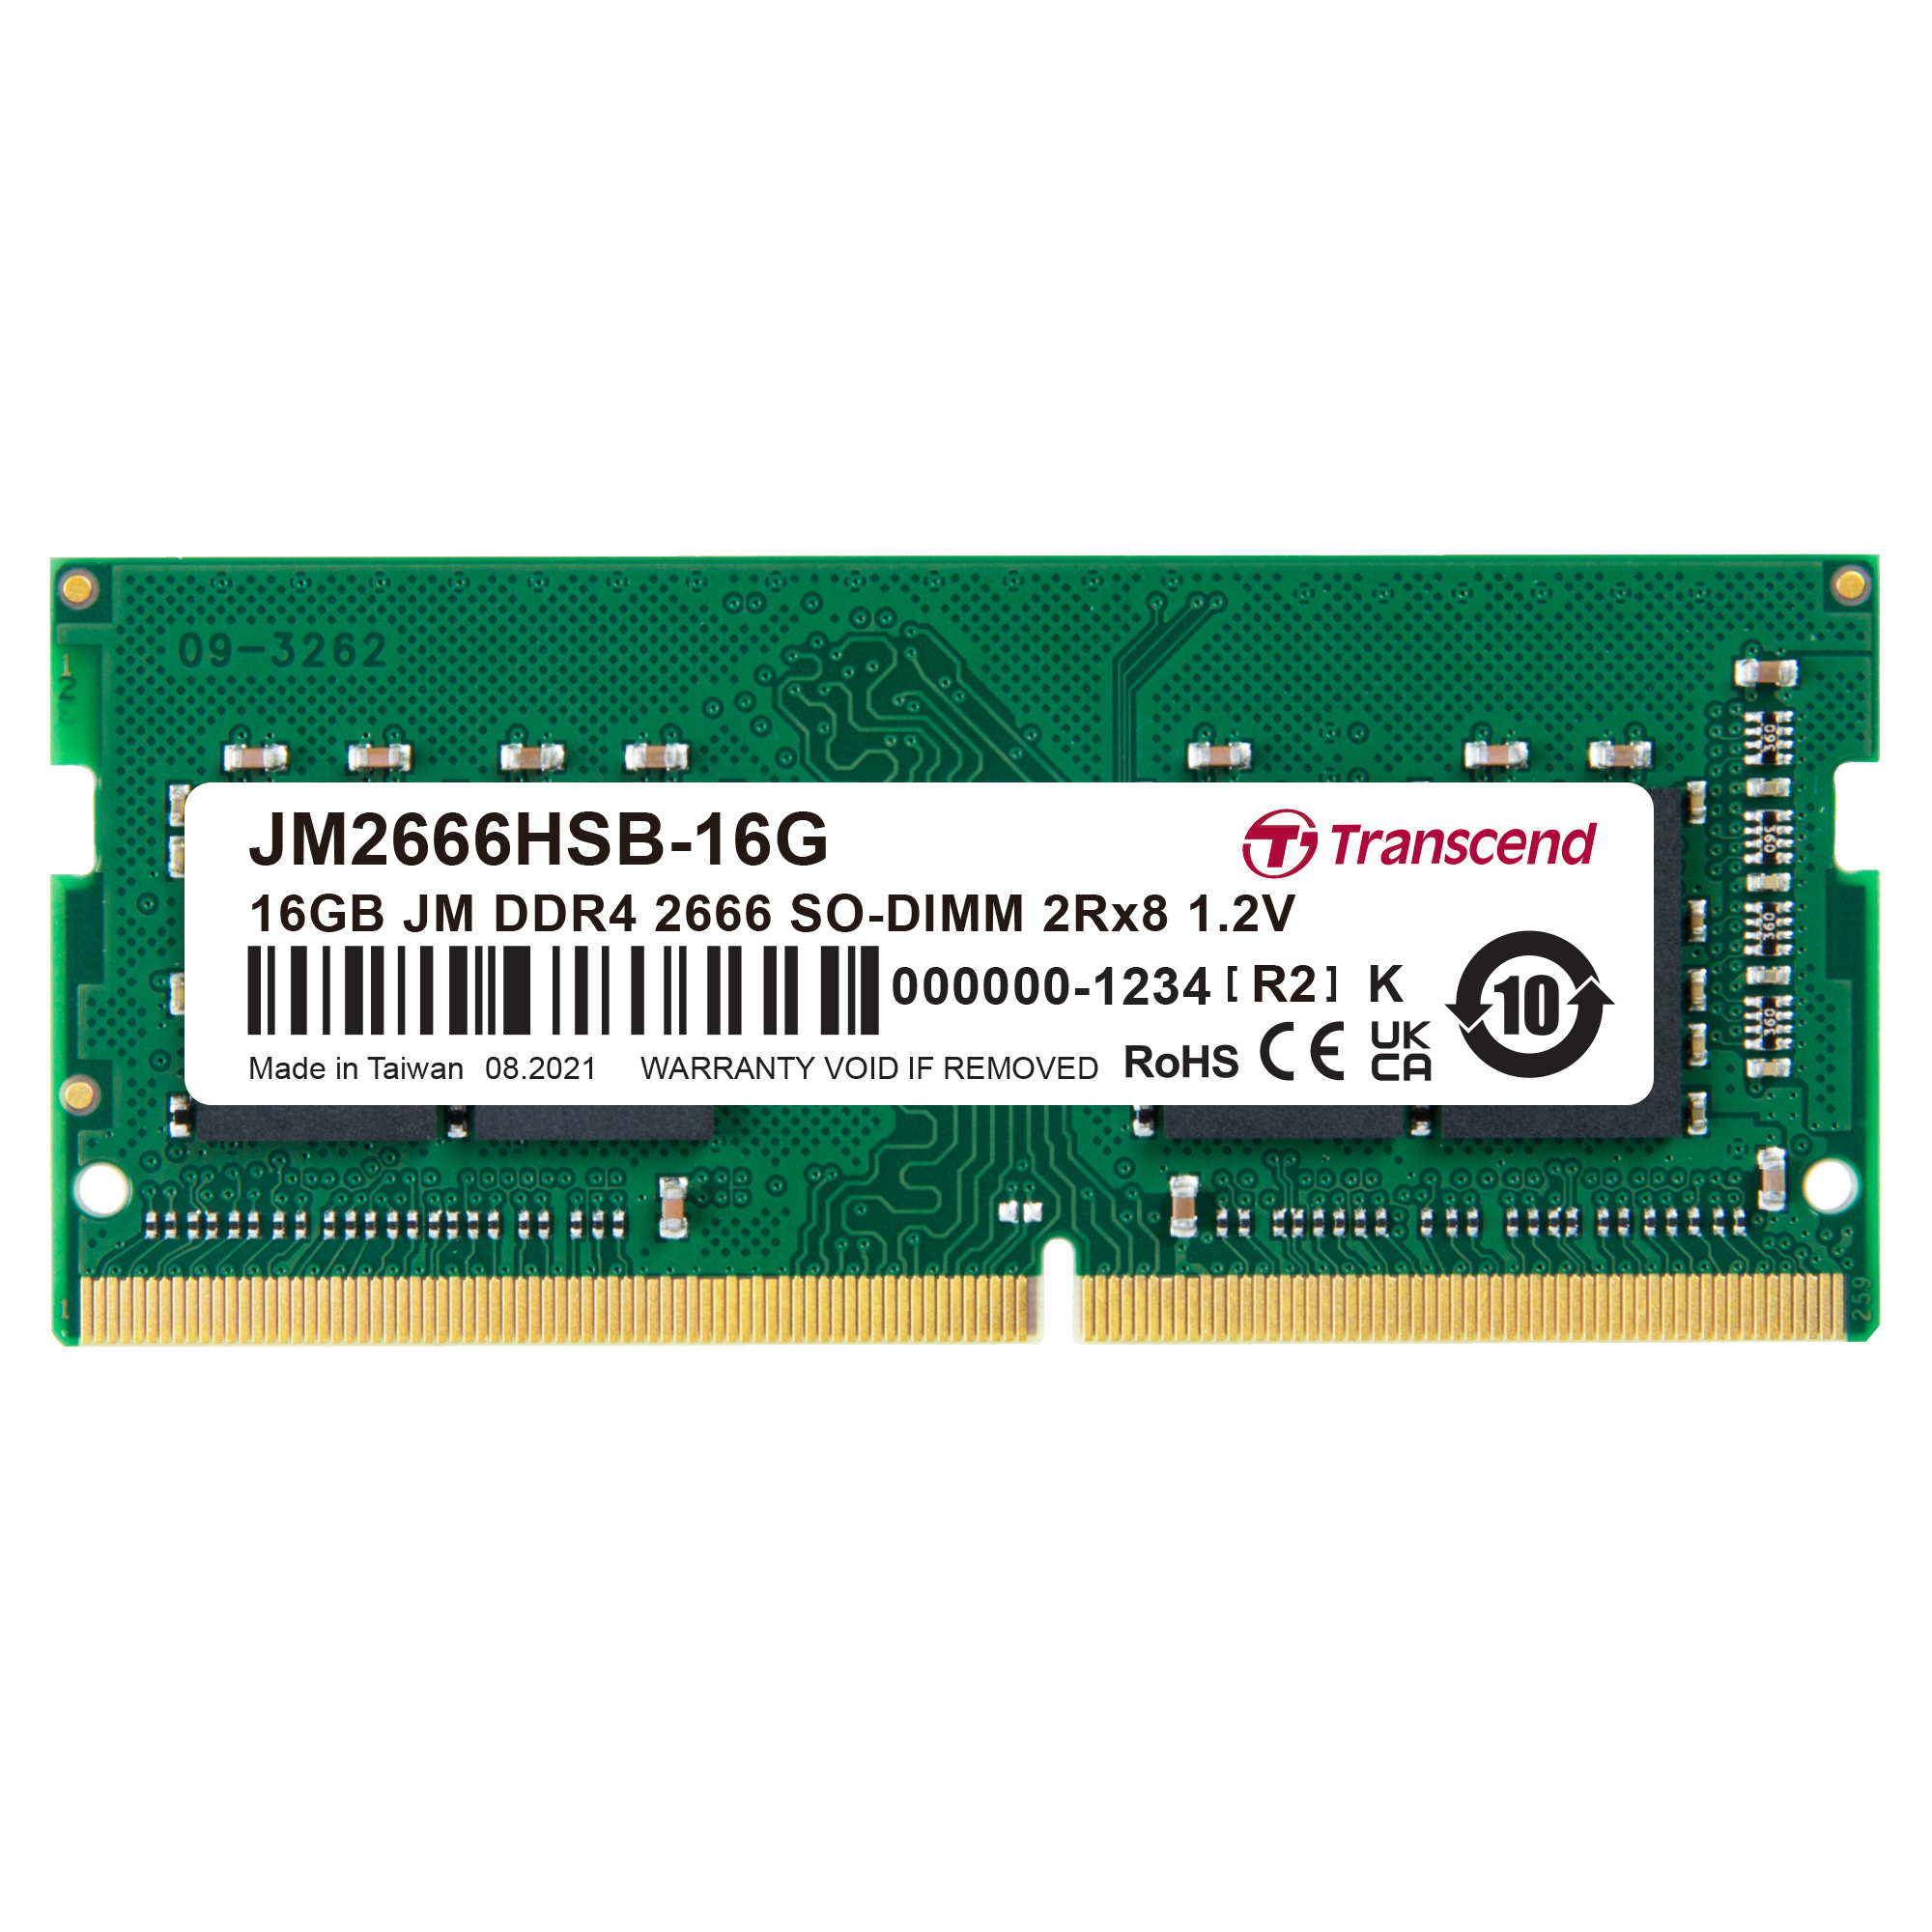 JM2666HSB-16G Transcend 16GB JM DDR4 2666 SO-DIMM 2Rx8 1.2V